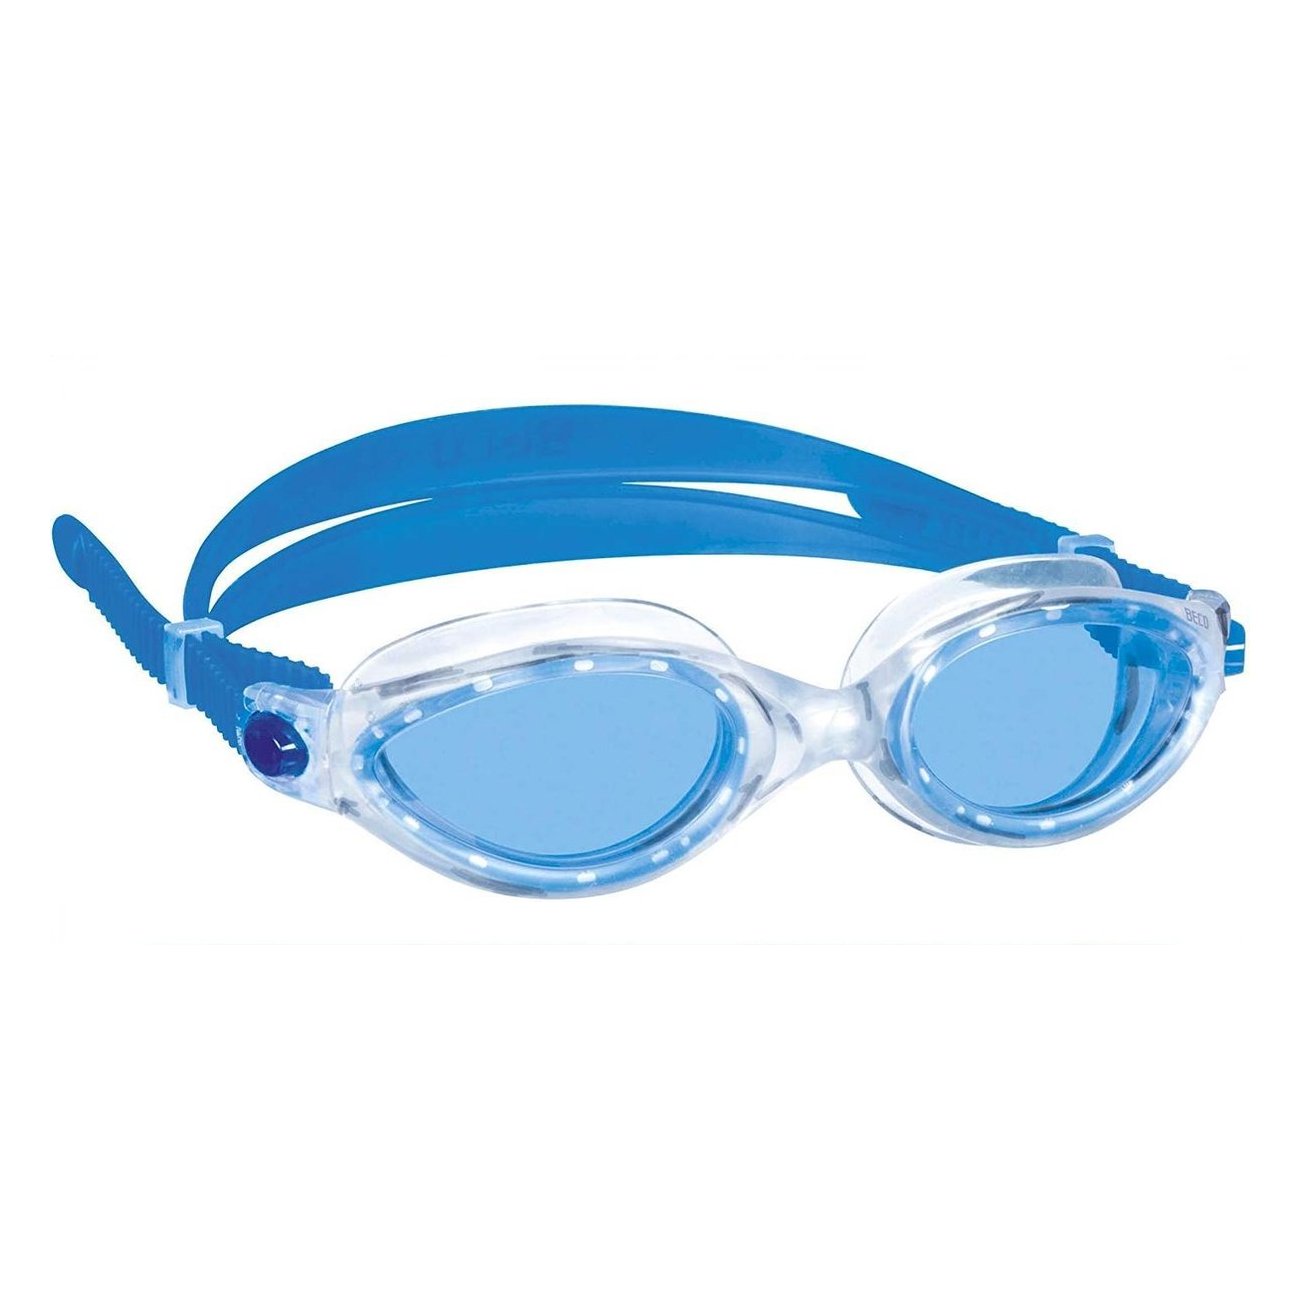 Beco Lunettes de natation Cancun Cellulose Propionate Unisex Bleu Adultes